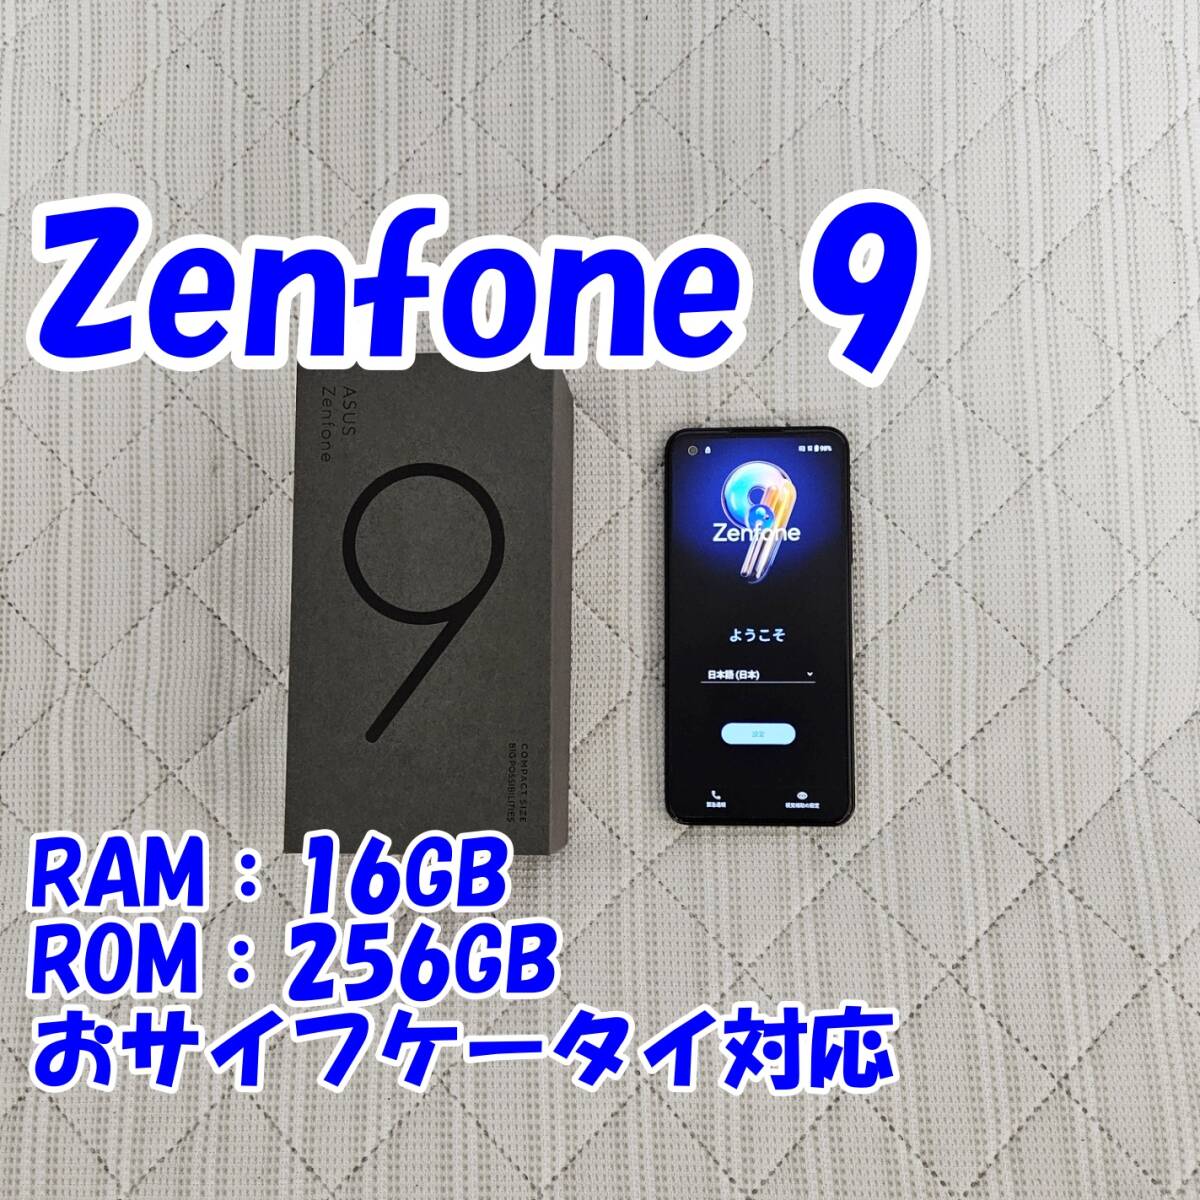 [ б/у товар ]Zenfone 9 AI2202 midnight черный ASUS Snapdragon 8+ Gen1 16GB 256GB SIM свободный игра 